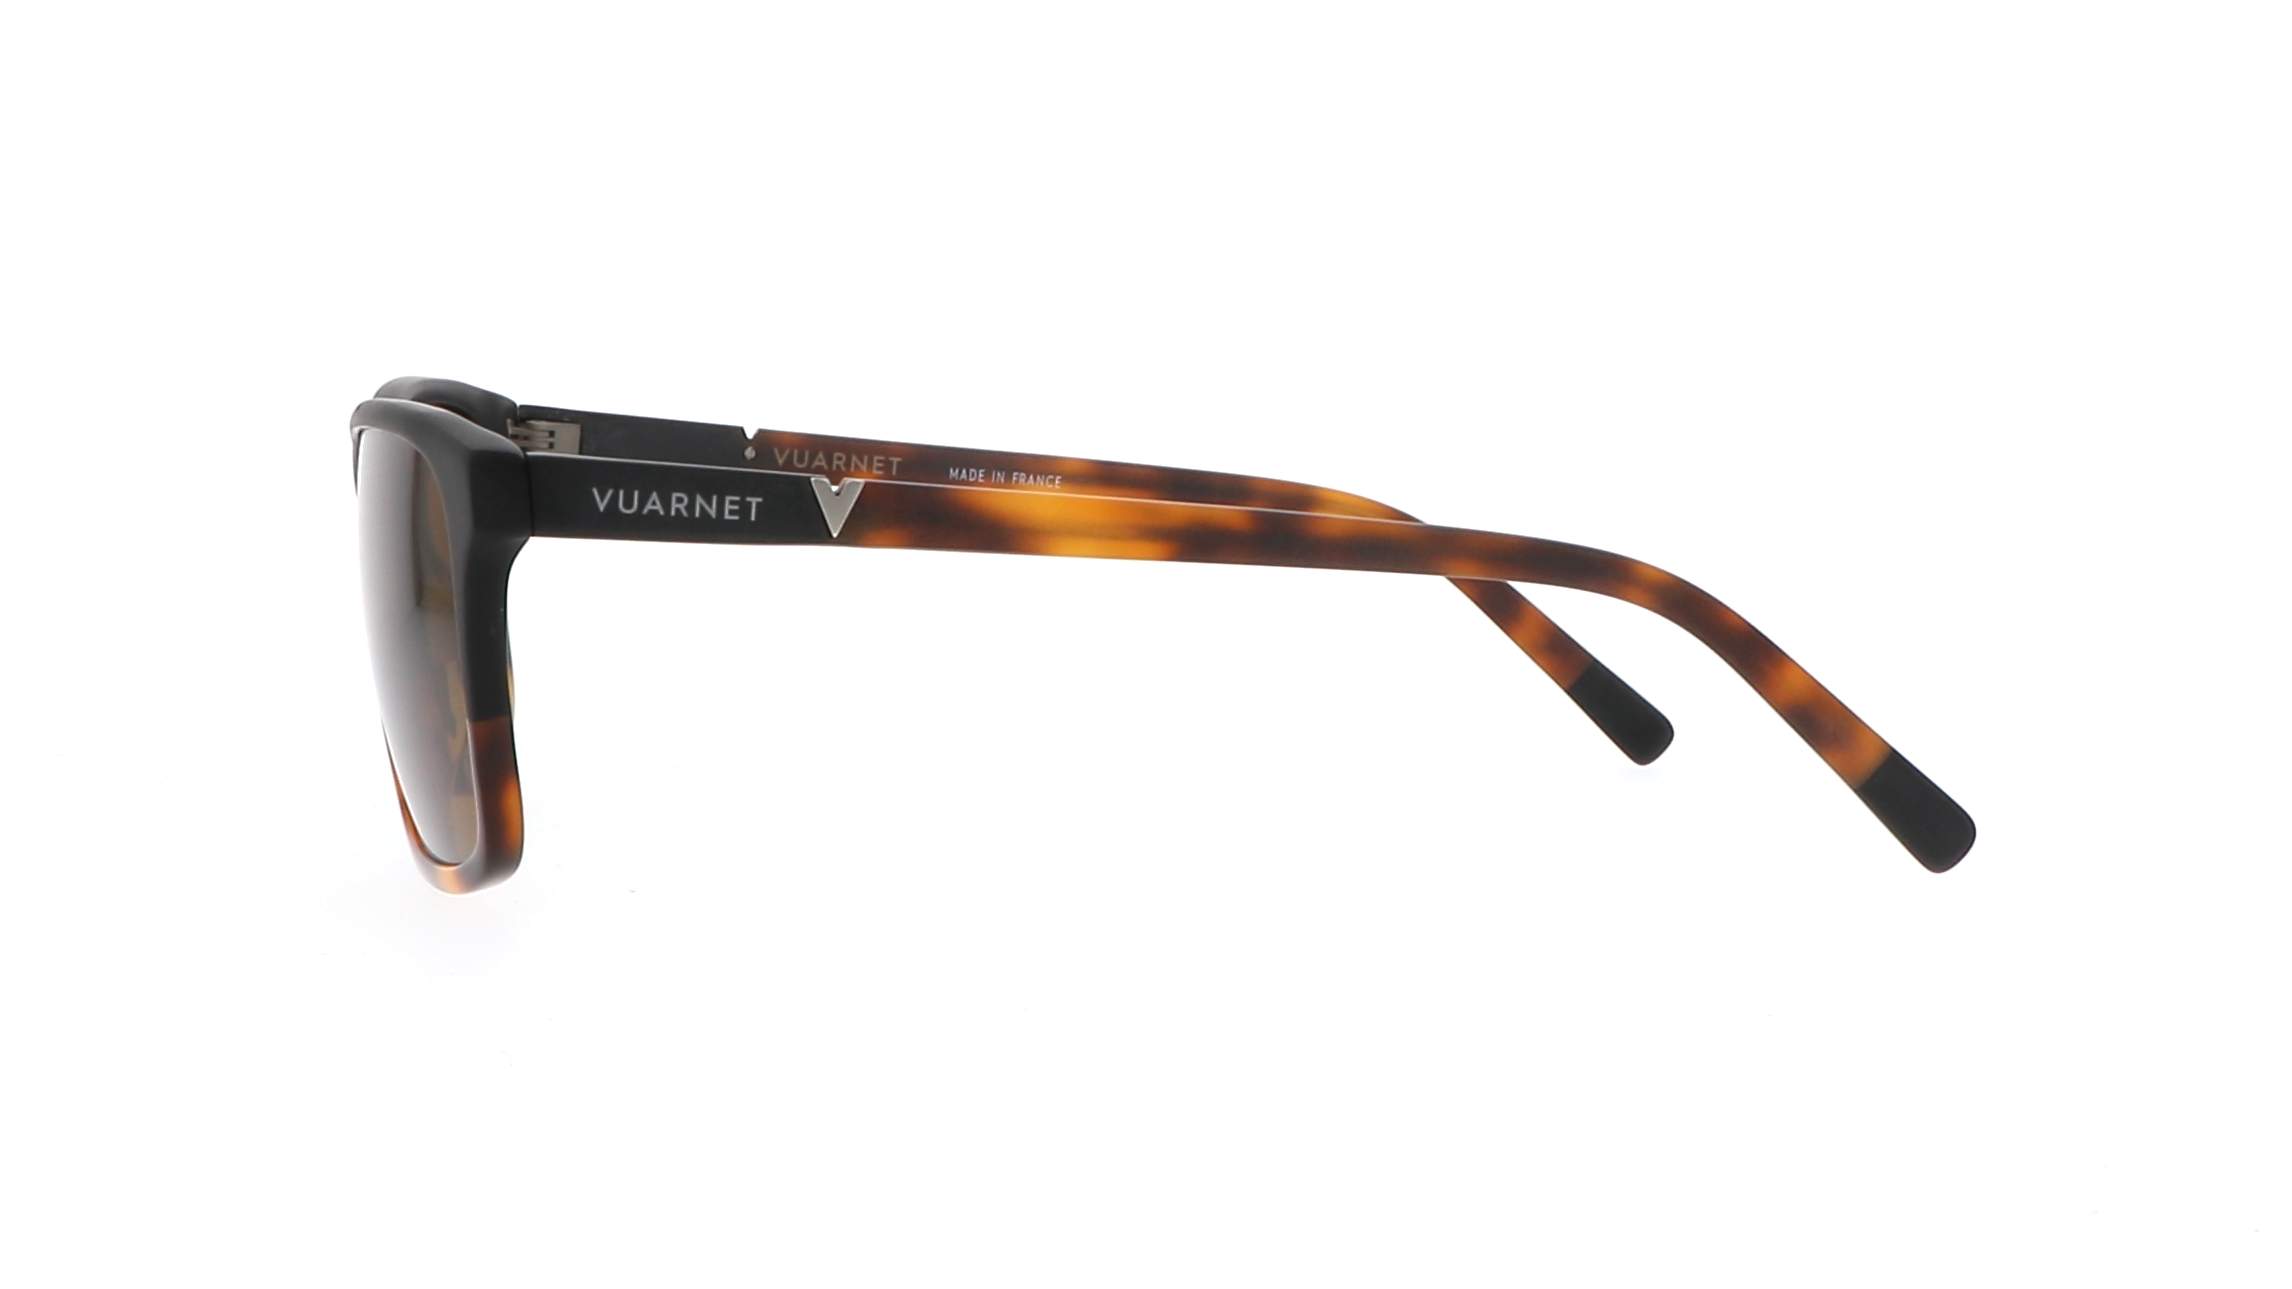 Sunglasses Vuarnet Belvedere VL1619 0008 2622 56-18 Tortoise in stock ...